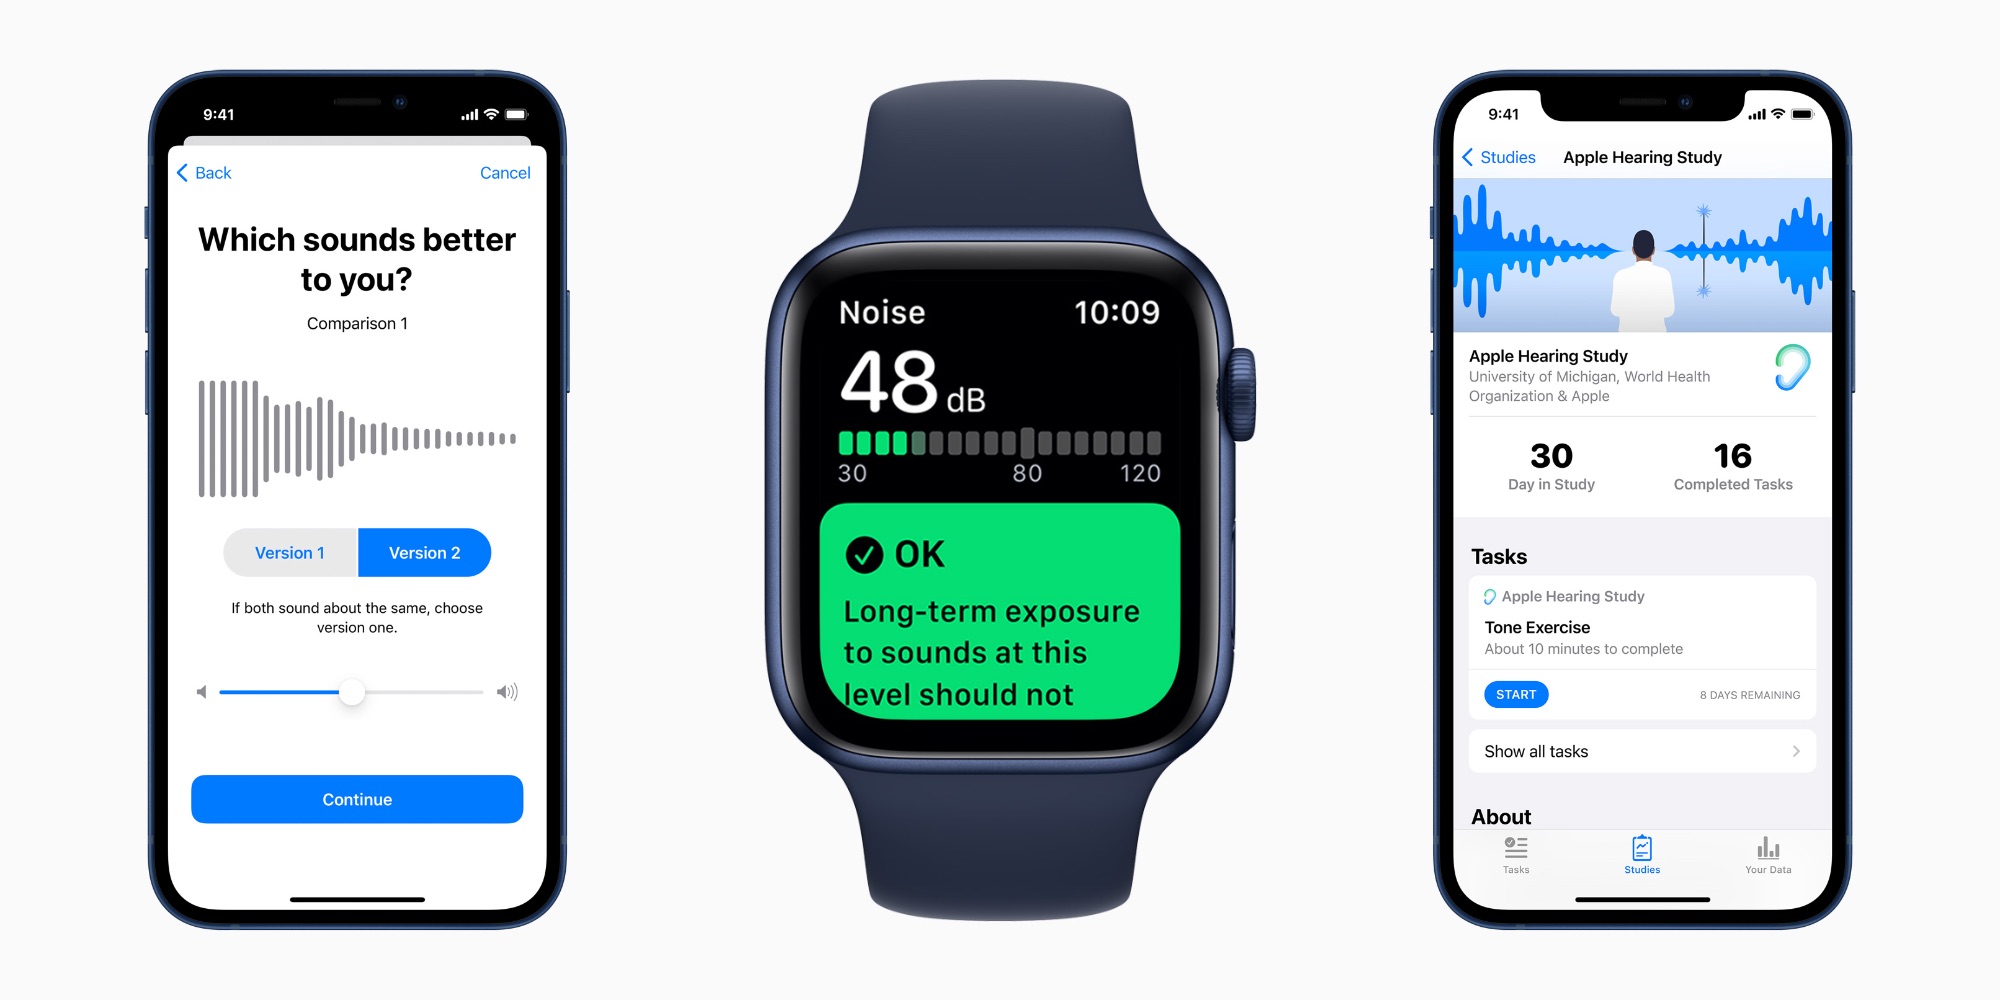 Apple делится обновлениями своего исследования слуха с данными iPhone и Apple Watch